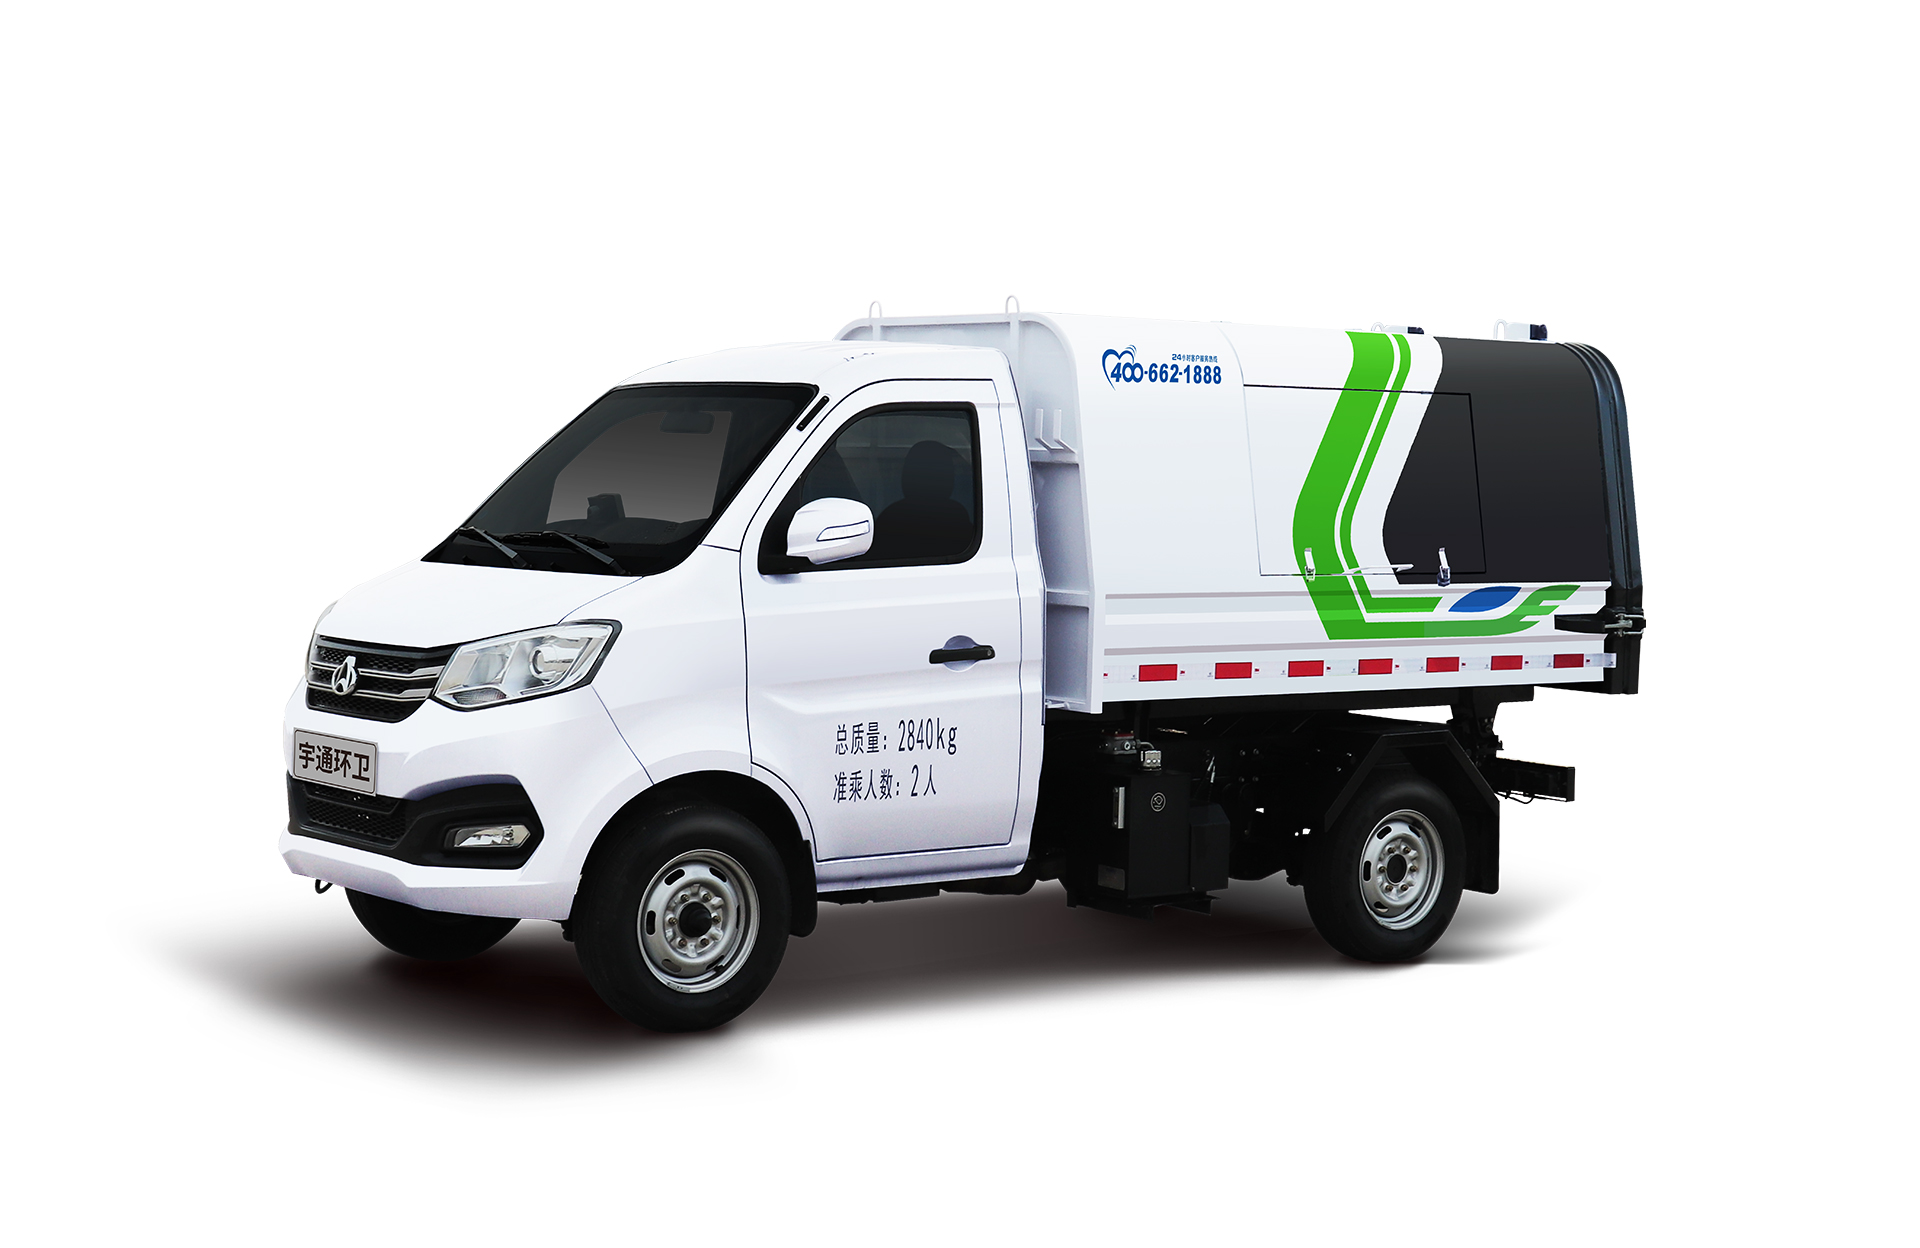 3t自卸式垃圾车 宇通环卫自卸垃圾车主要具备小巧灵活、密封性好、装载能力强等主要特点。